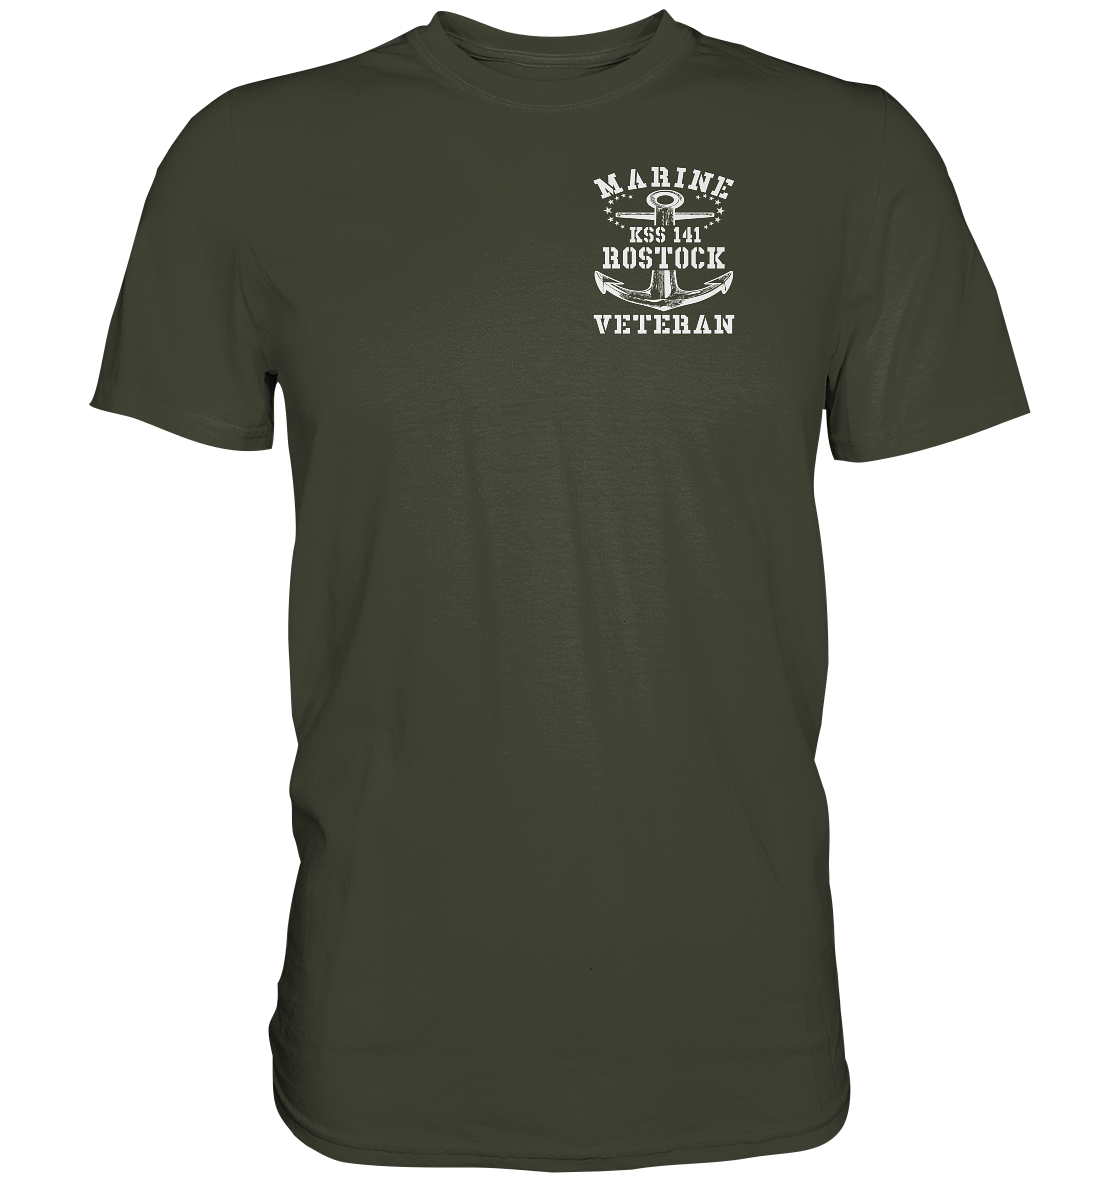 KSS 141 ROSTOCK Marine Veteran Brustlogo - Premium Shirt